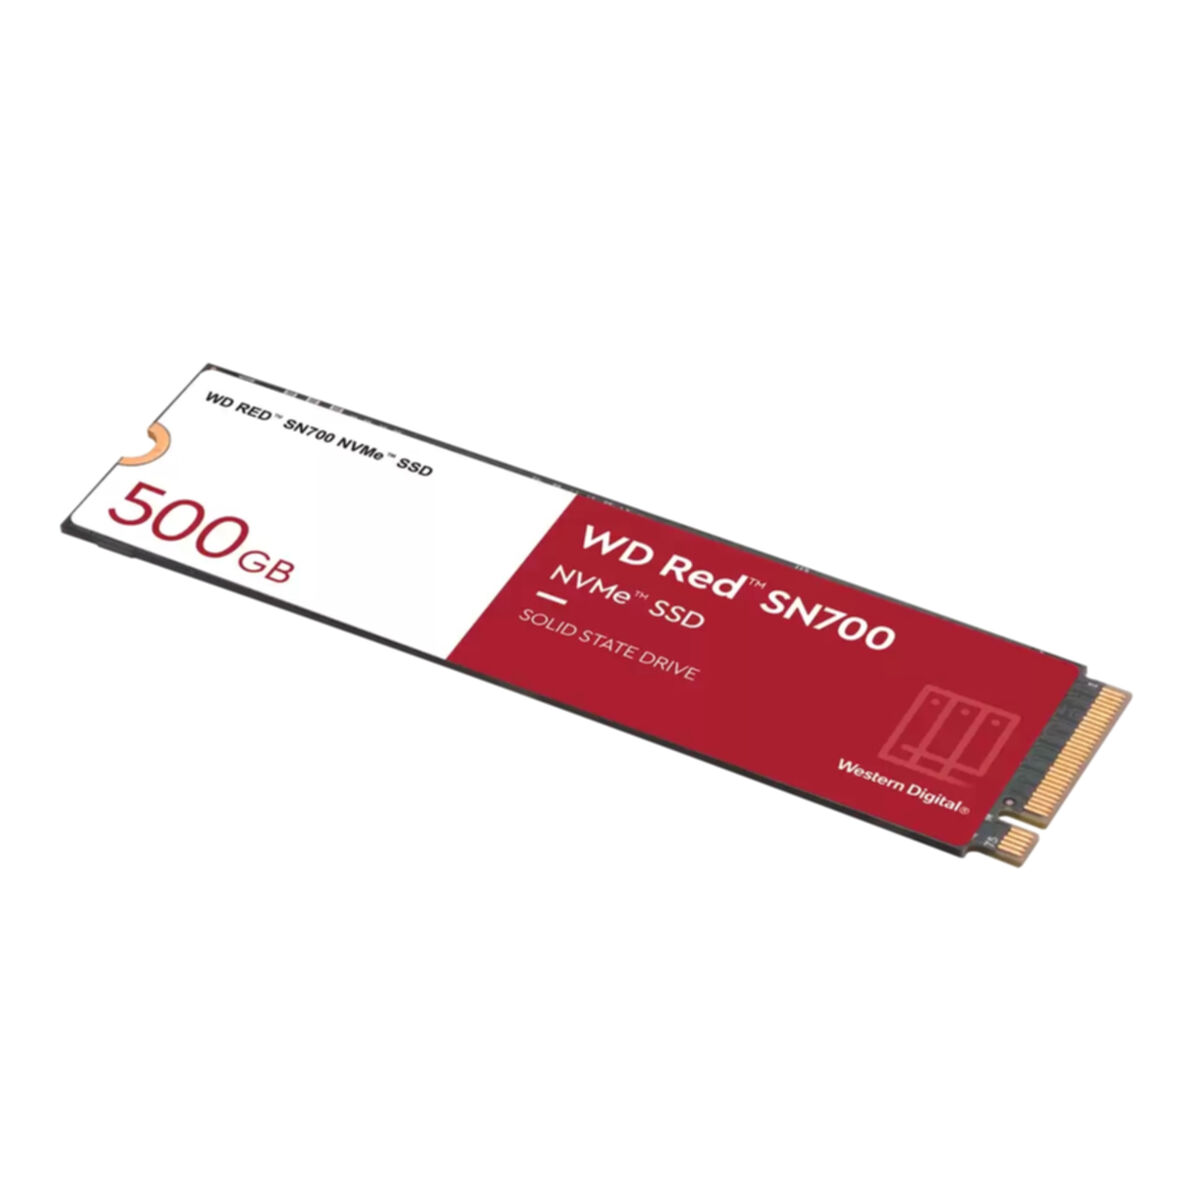 WESTERN DIGITAL WD Red intern SN700, SSD, GB, 500